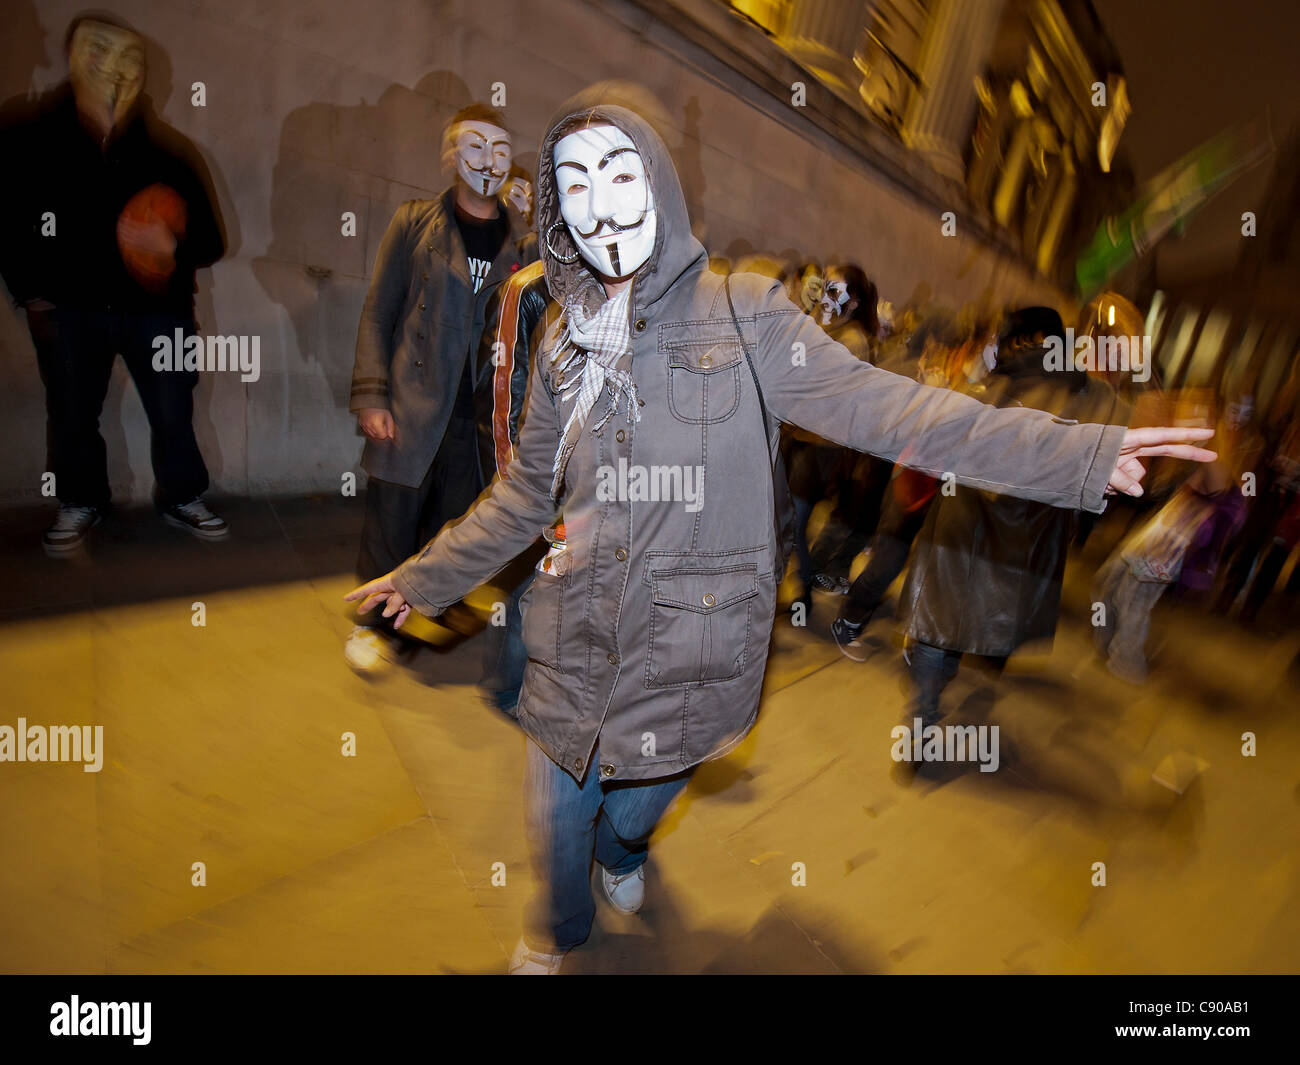 Adeptes de Anonymous UK arrivent à Trafalgar Square V pour Vendetta sportives des masques. Ils dansent et puis sur la place mars Banque D'Images